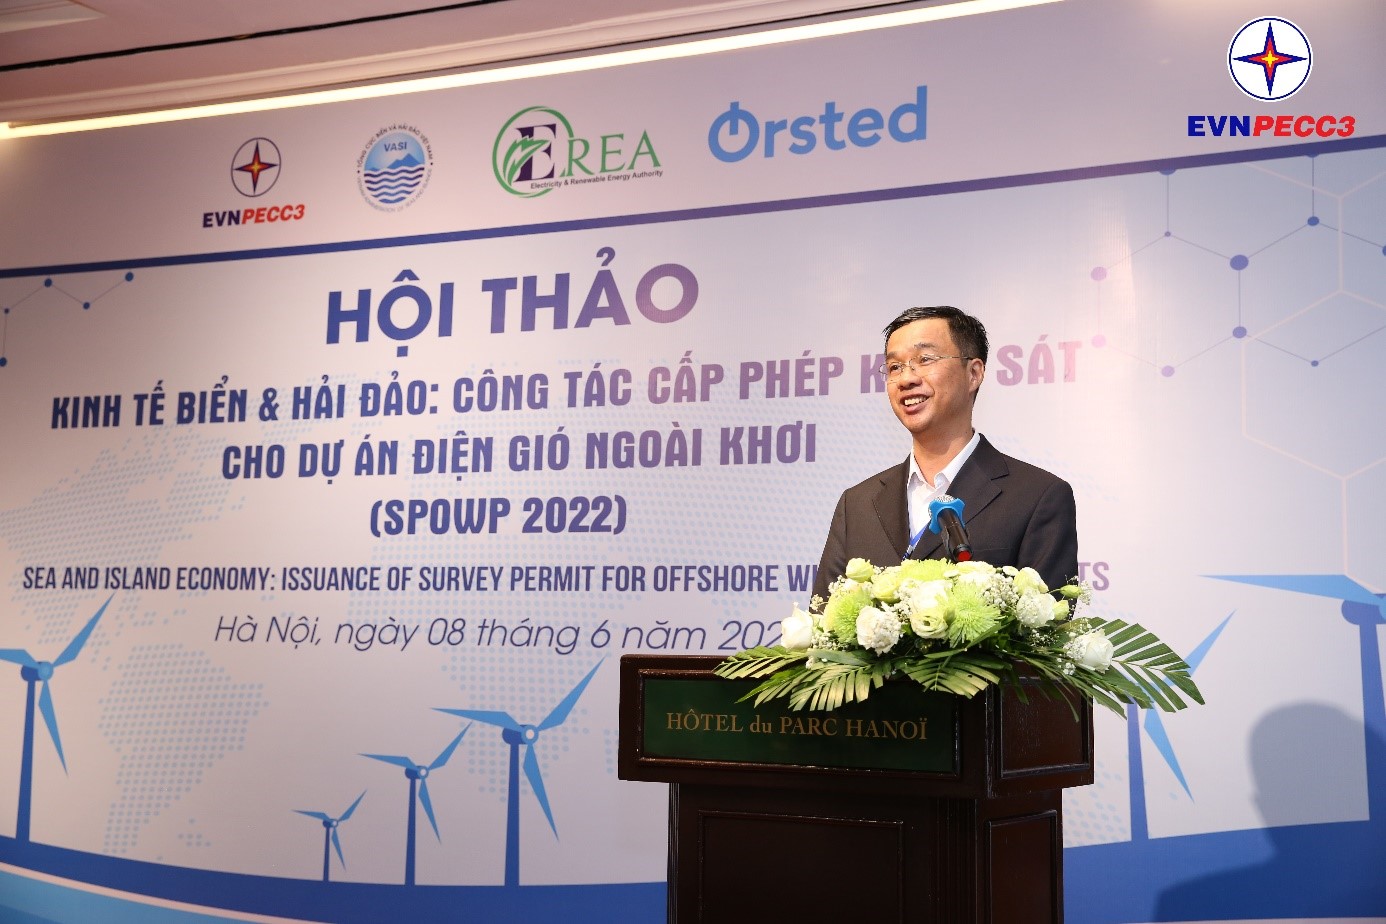 Ông Trần Quốc Điền, Phó Tổng Giám đốc EVNPECC3 phát biểu khai mạc hội thảo